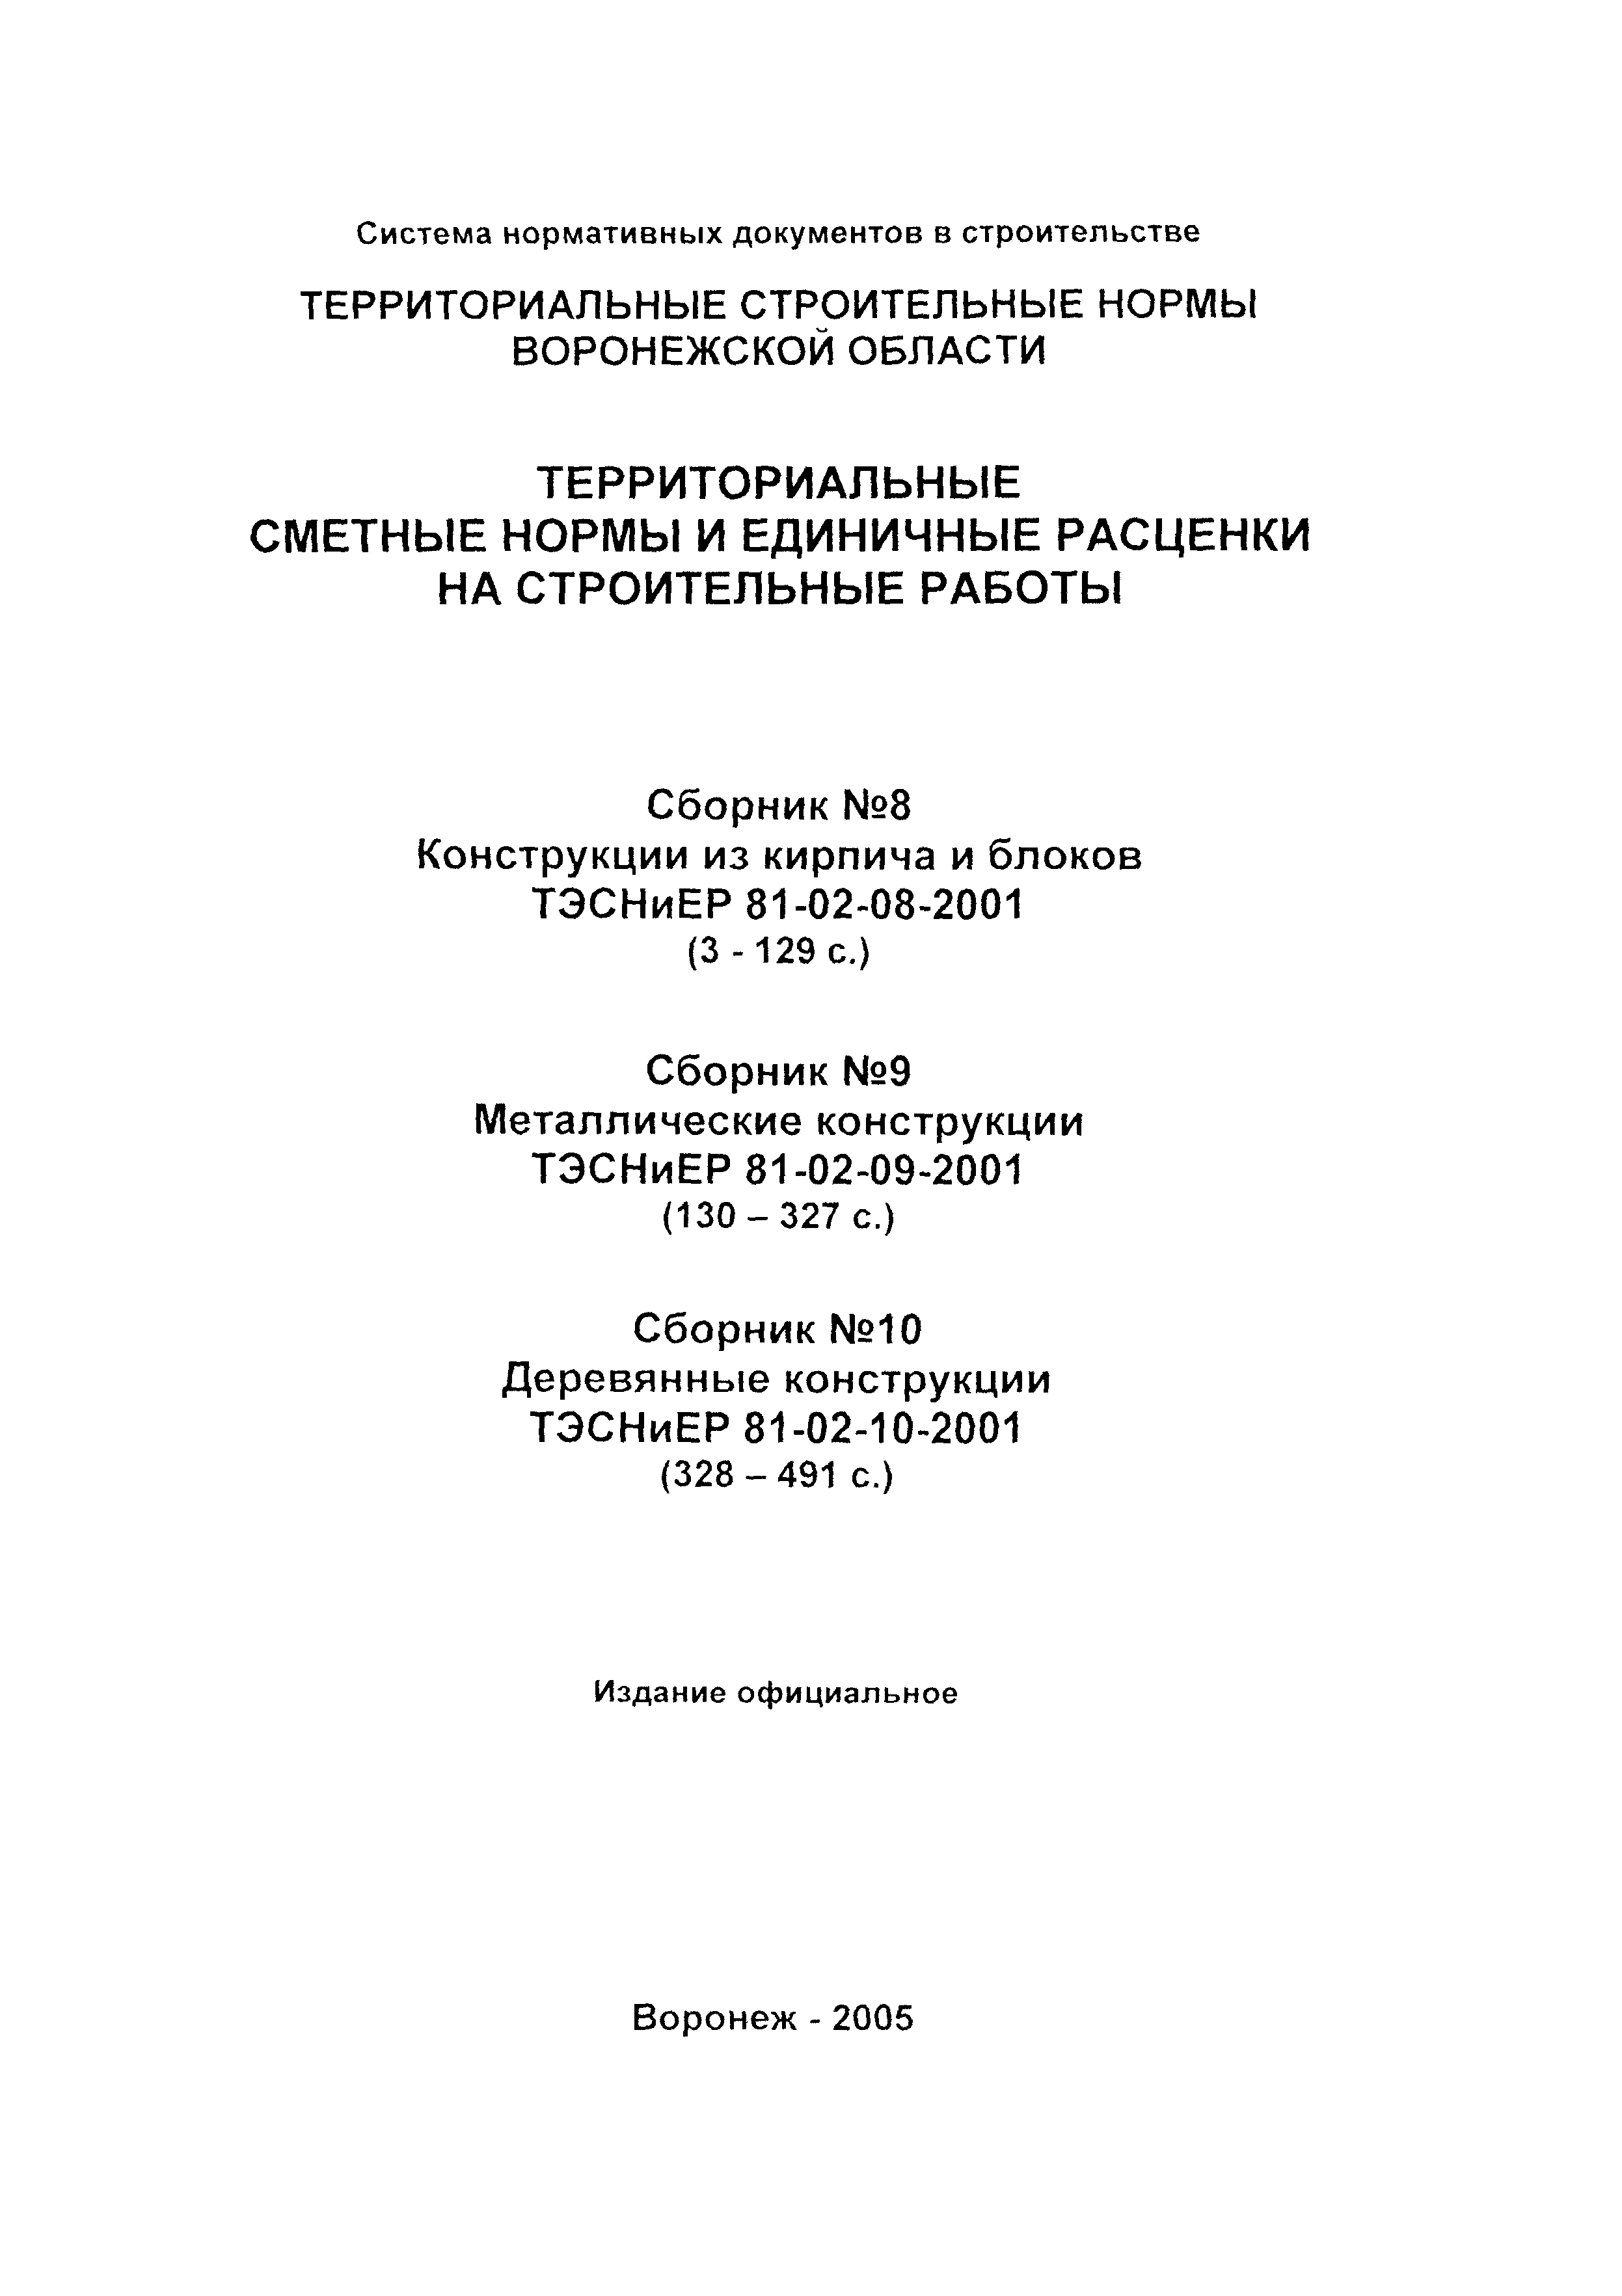 ТЭСНиЕР Воронежская область 81-02-08-2001